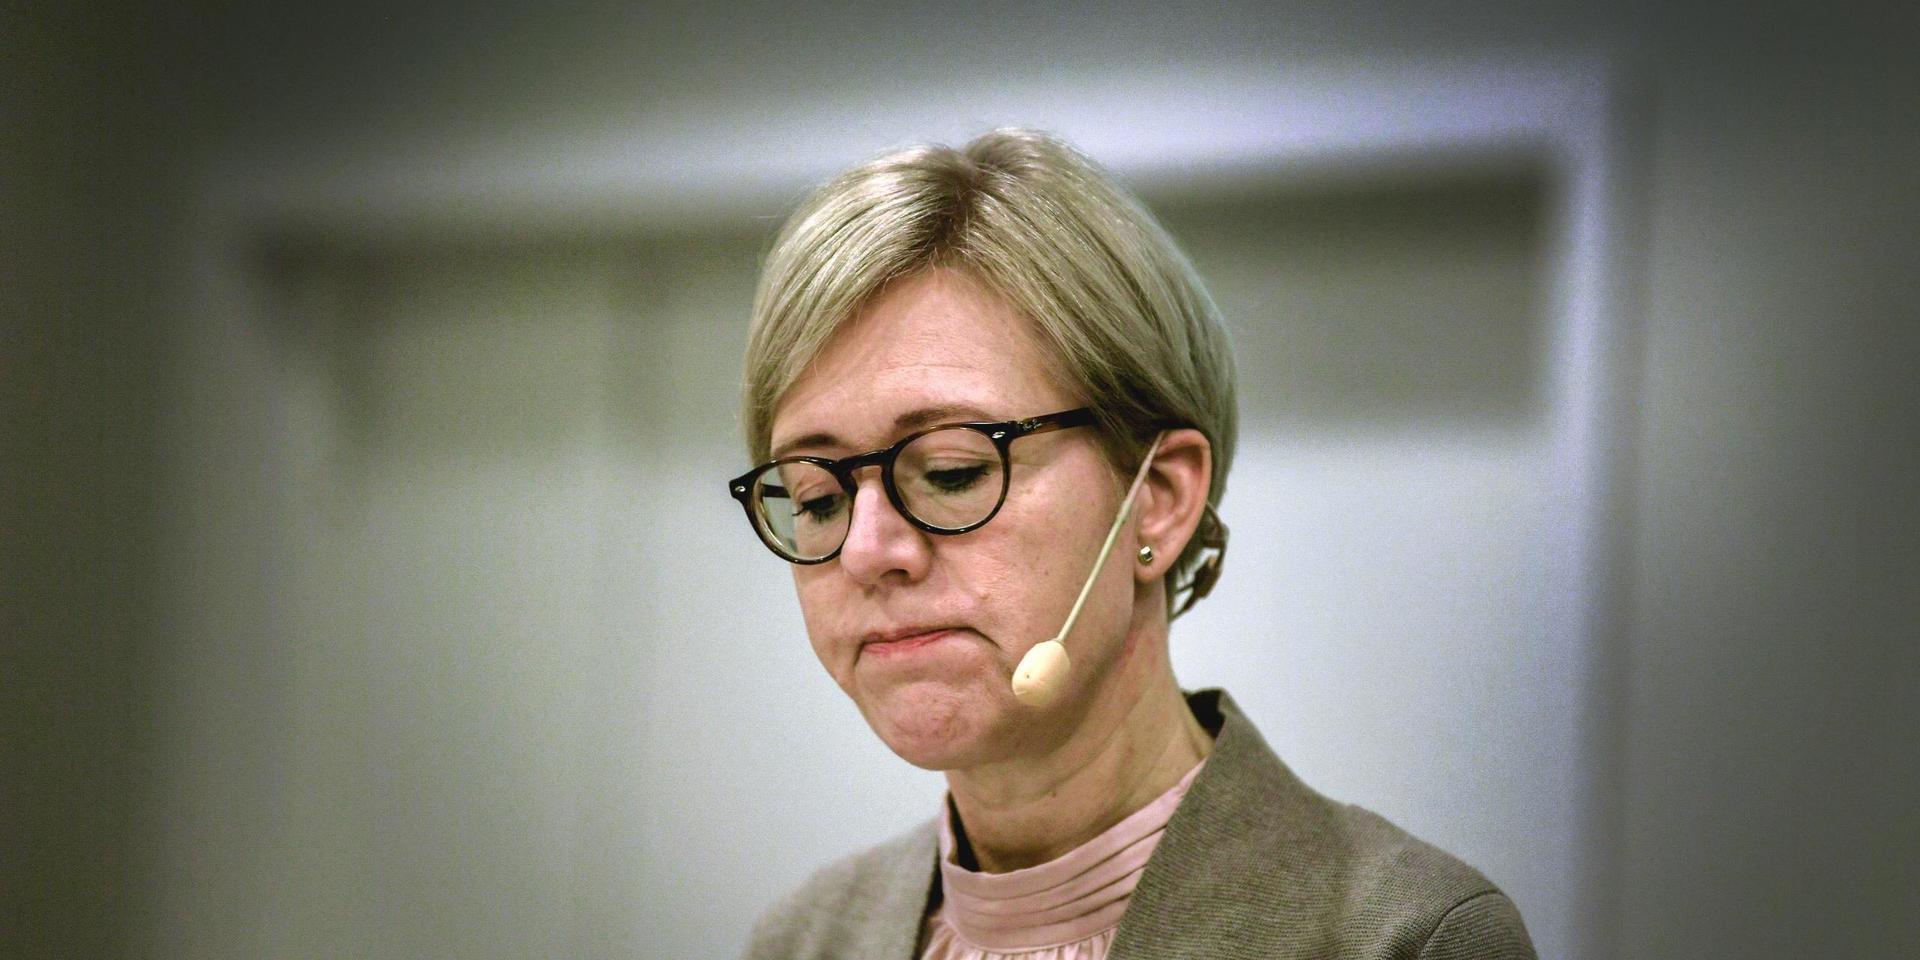 Förkrossande. Ingen region skötte sina åtaganden för de äldre under pandemin konstaterar Ivo:s generaldirektör Sofia Wallström.